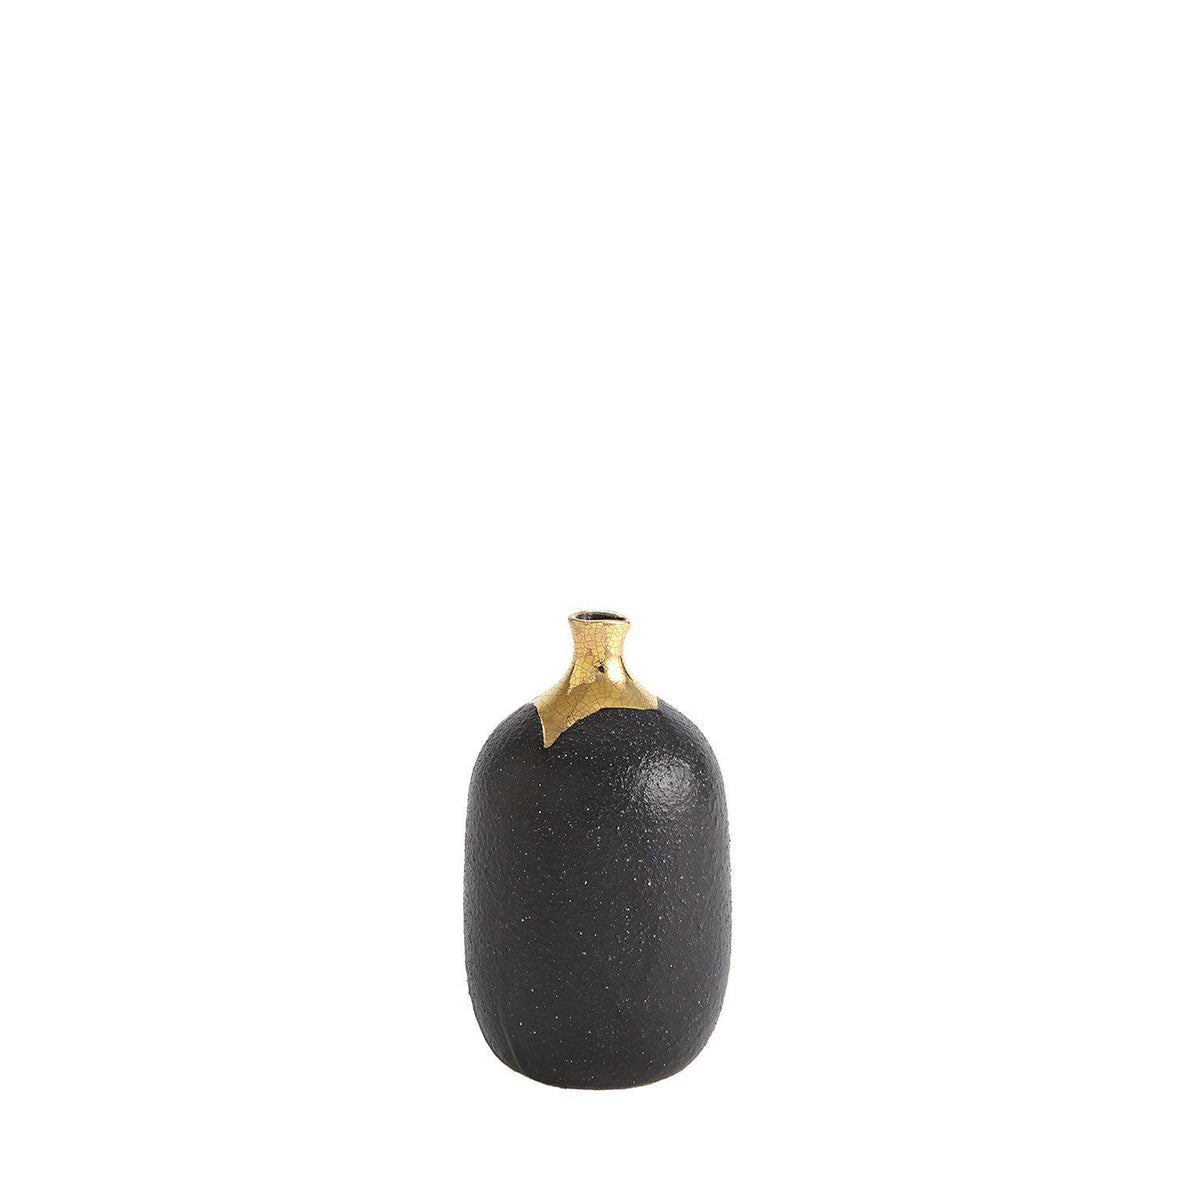 Dipped Golden Crackle/Black Vases-Global Views-Vases-Artistic Elements